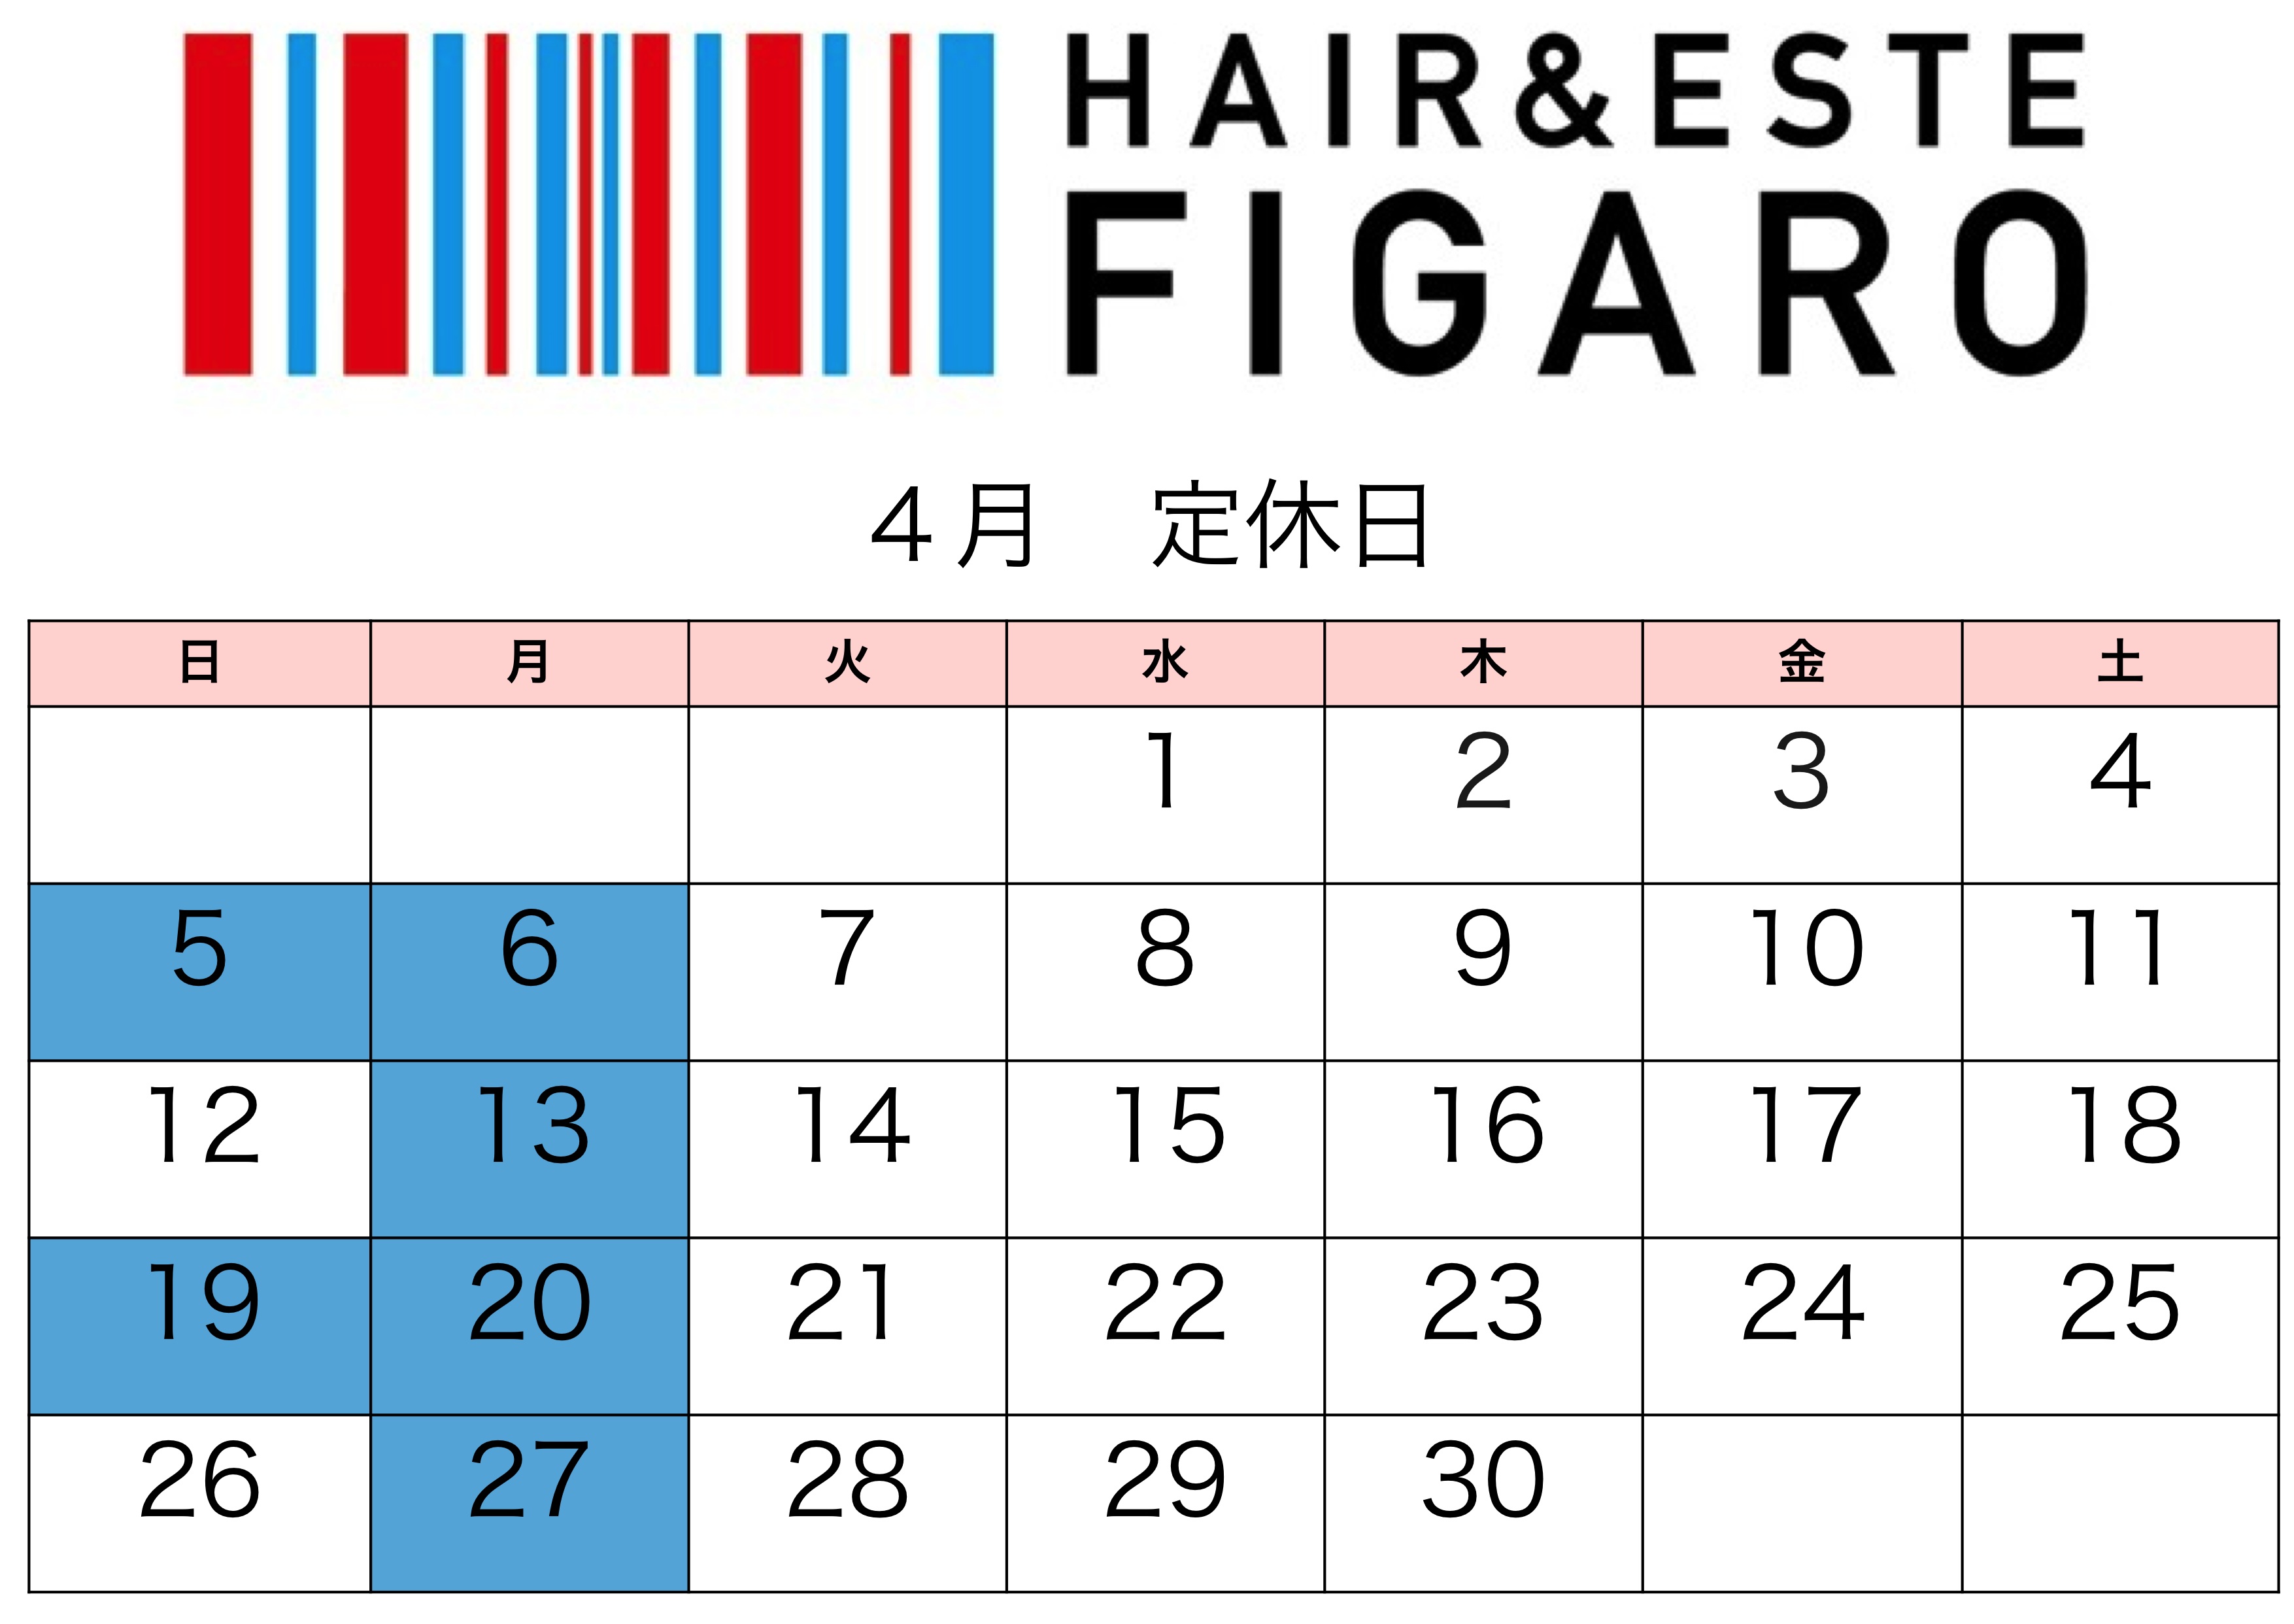 http://figaro-hair.com/blog/%E5%AE%9A%E4%BC%91%E6%97%A5_0.jpg